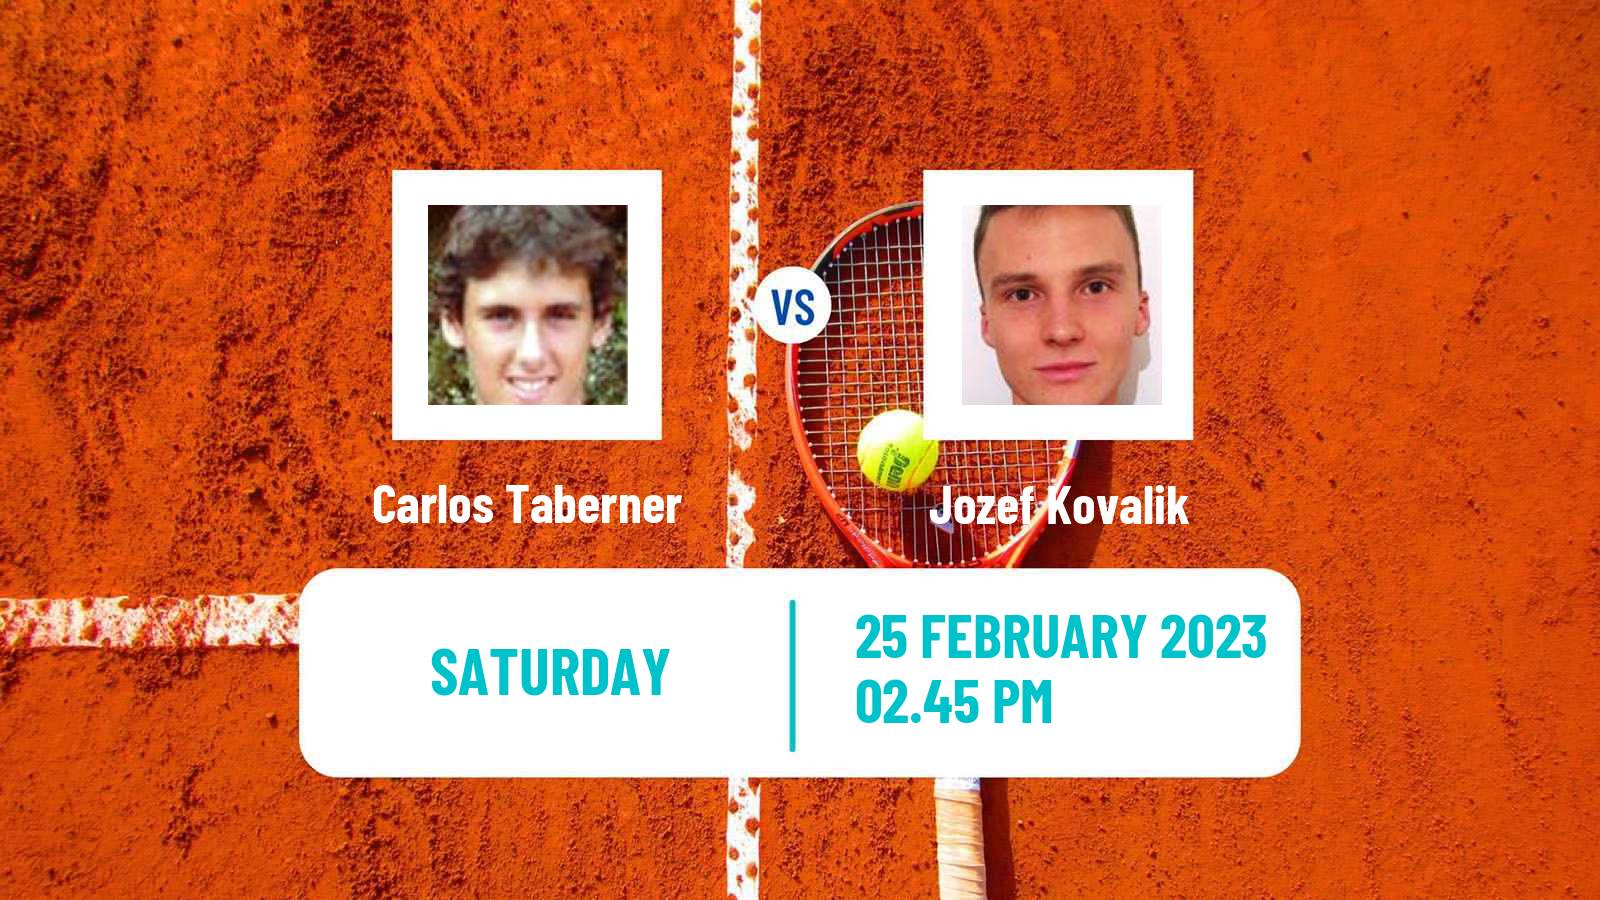 Tennis ATP Santiago Carlos Taberner - Jozef Kovalik